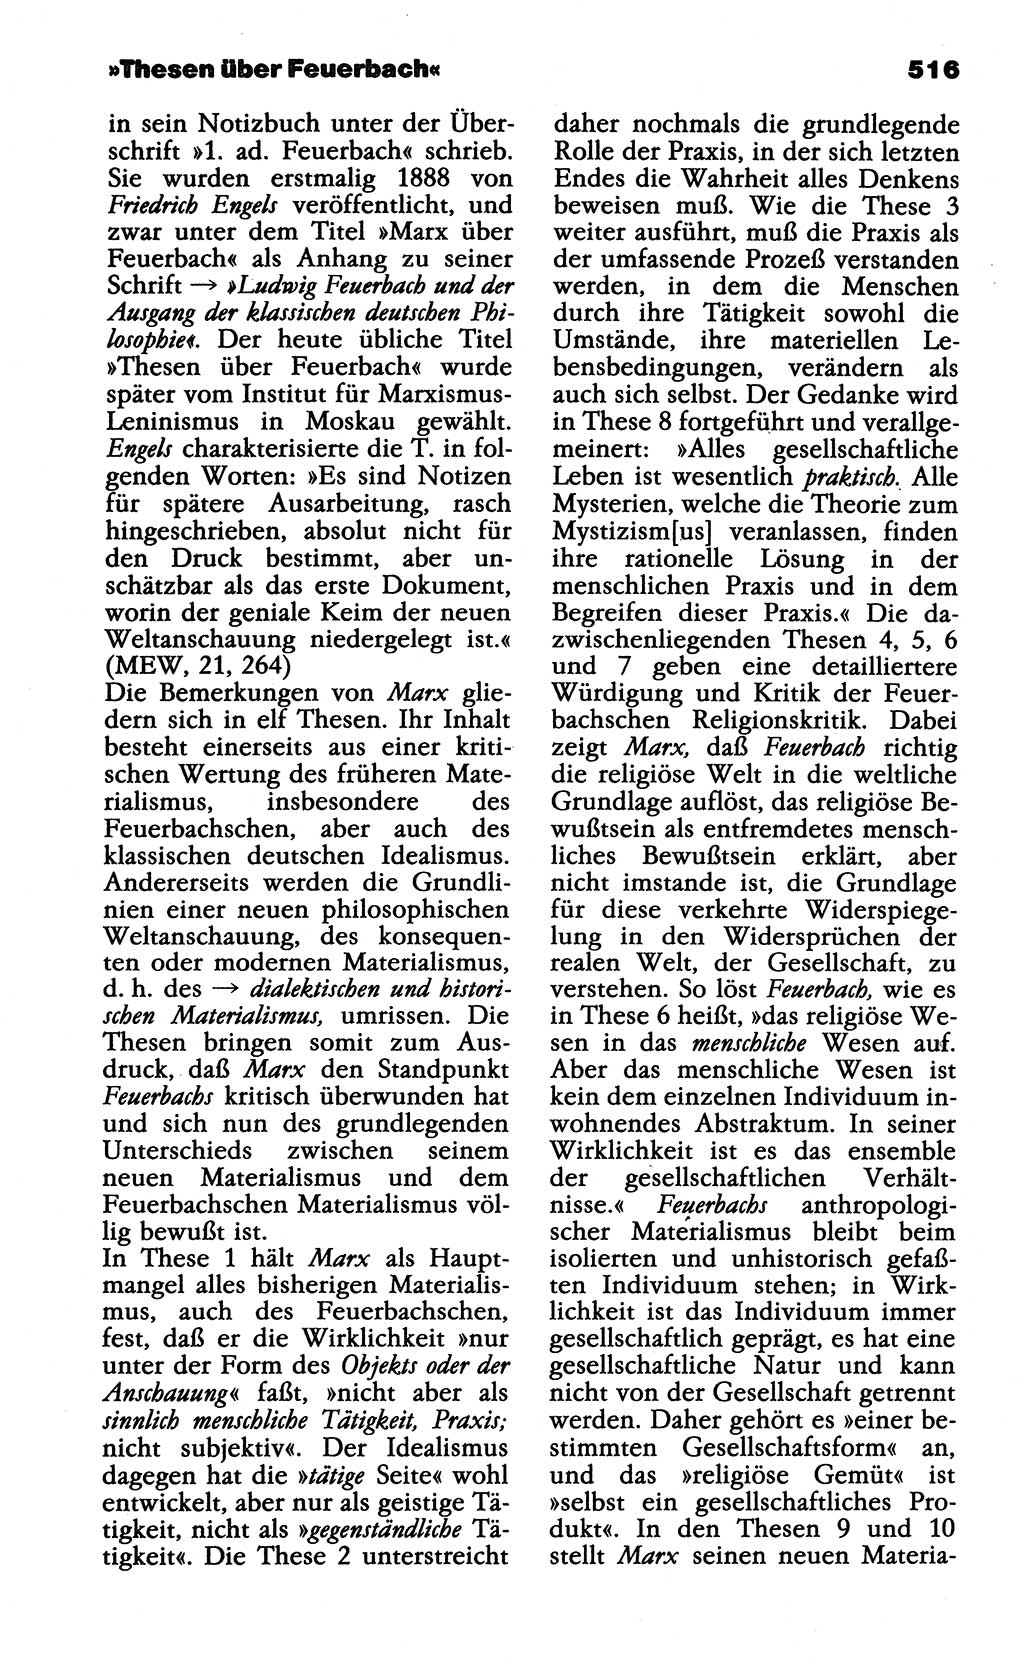 Wörterbuch der marxistisch-leninistischen Philosophie [Deutsche Demokratische Republik (DDR)] 1985, Seite 516 (Wb. ML Phil. DDR 1985, S. 516)